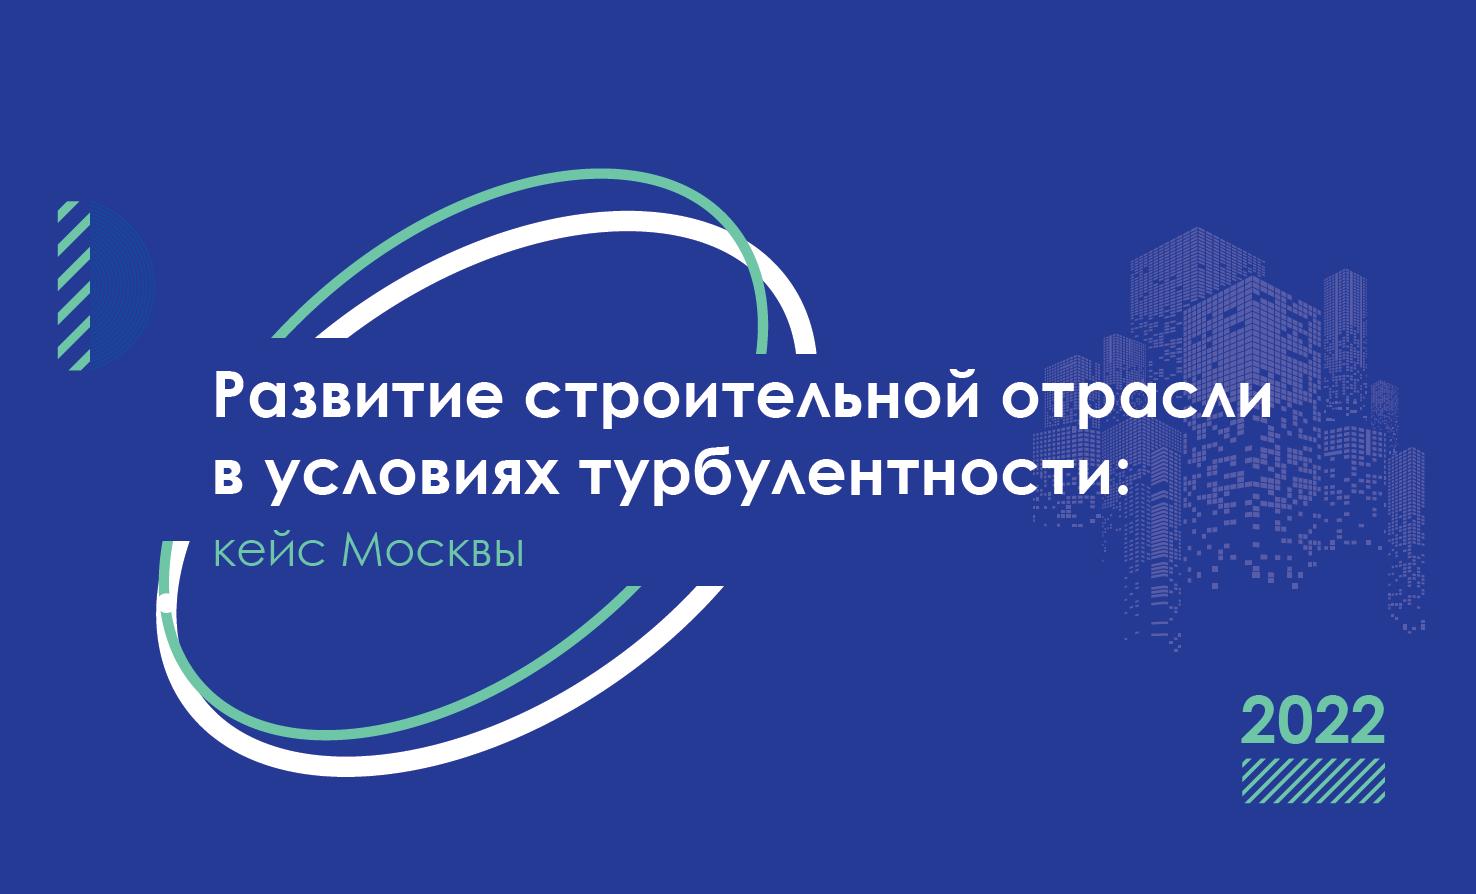 Конференция по теме развития строительной отрасли пройдет в Москве